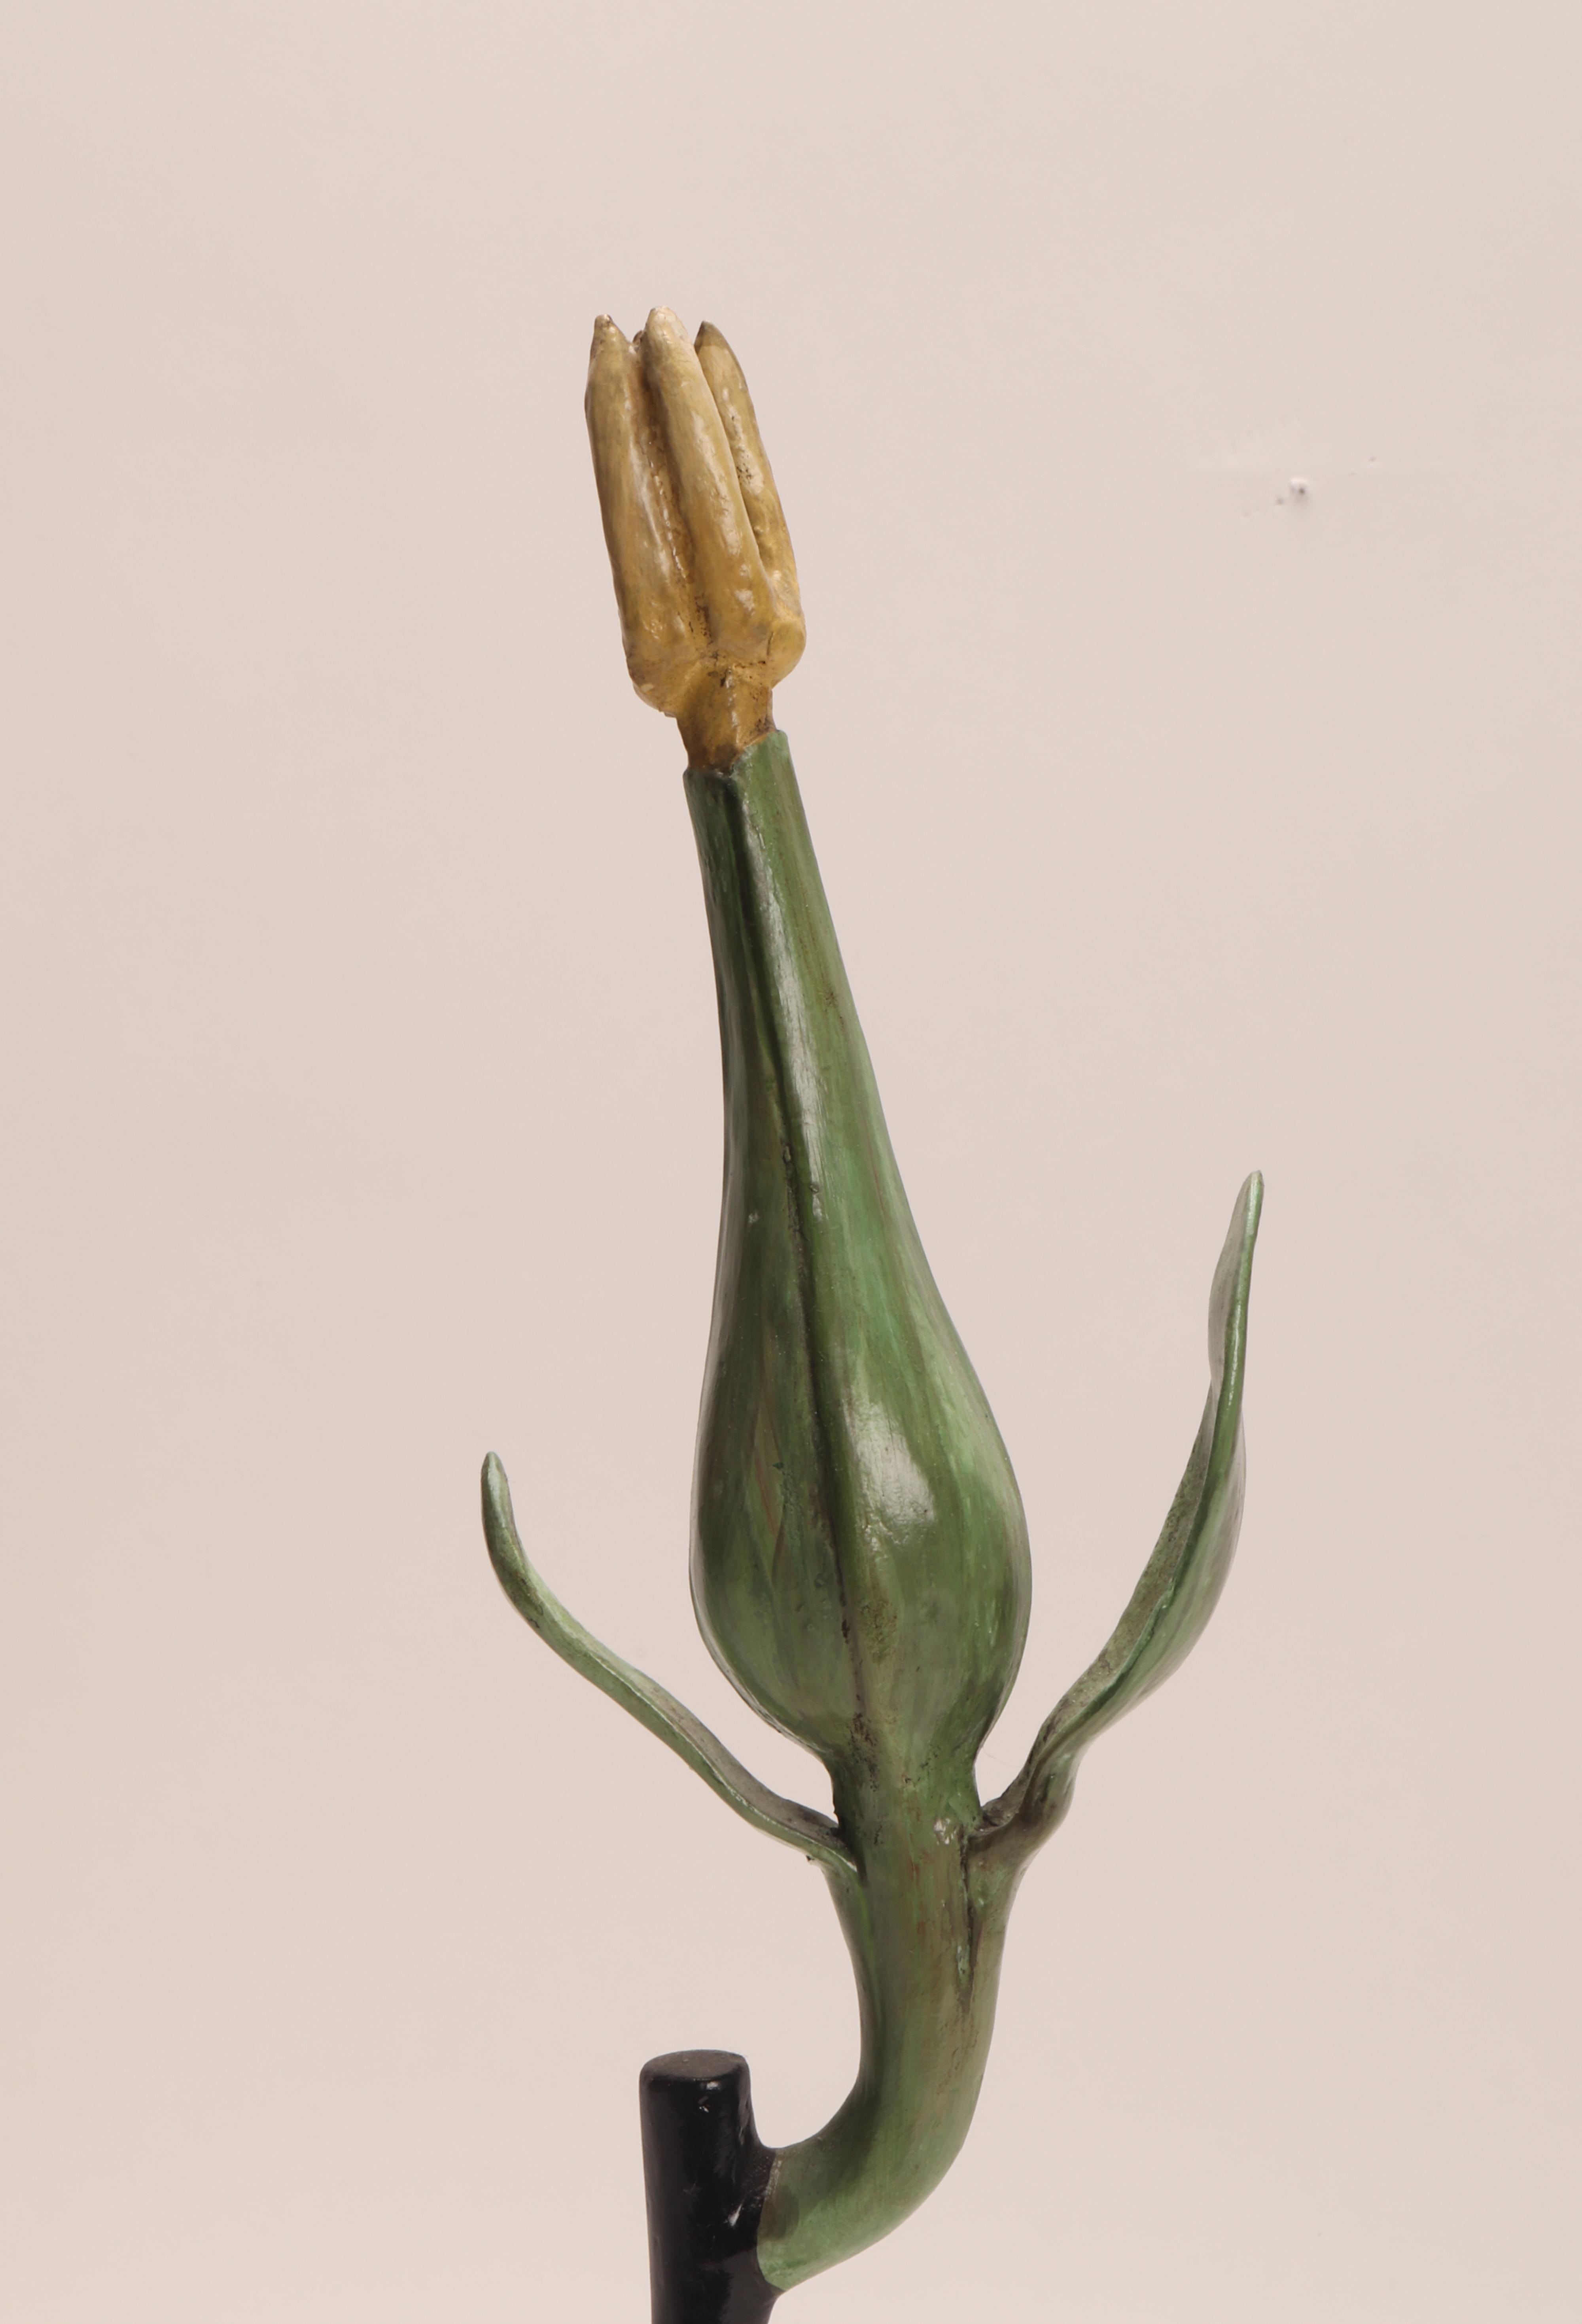 Ein botanisch-didaktisches Exemplar, das eine Vitis Vinifera-Blüte darstellt, blassgelb-grün, aus Pappmaché, Gips und Holz handbemalt. Äußerst detailliert. Paravia Mailand, Italien 1900 ca. Diese botanischen Modelle wurden in Schulen verwendet, um